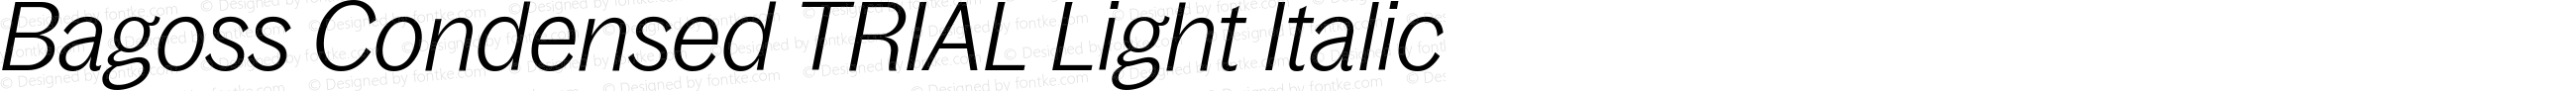 Bagoss Condensed TRIAL Light Italic